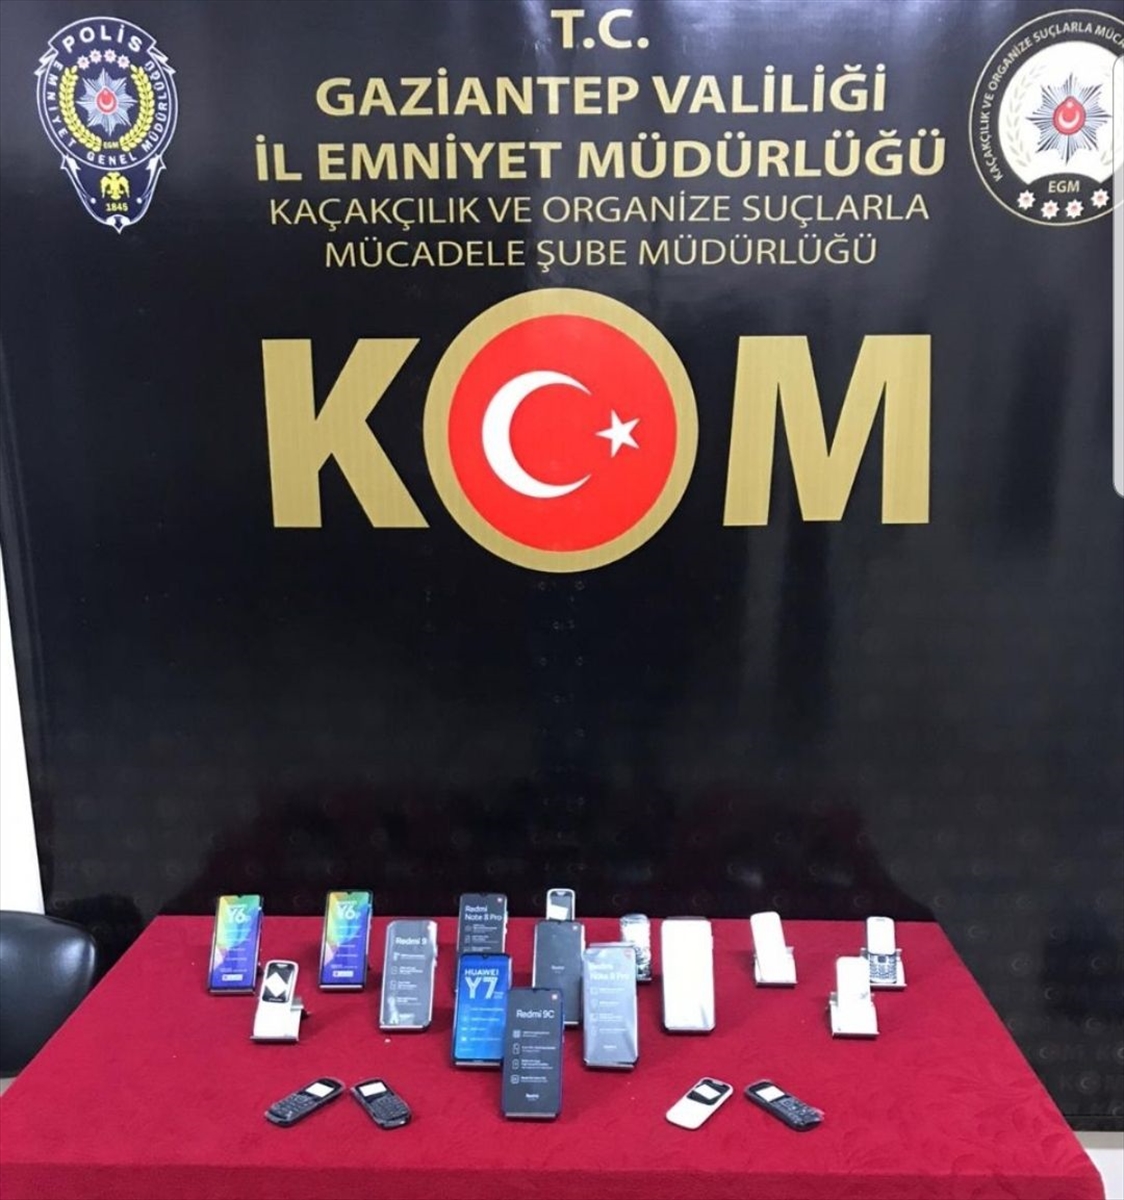 Gaziantep'te gümrük kaçağı 19 cep telefonu ele geçirildi